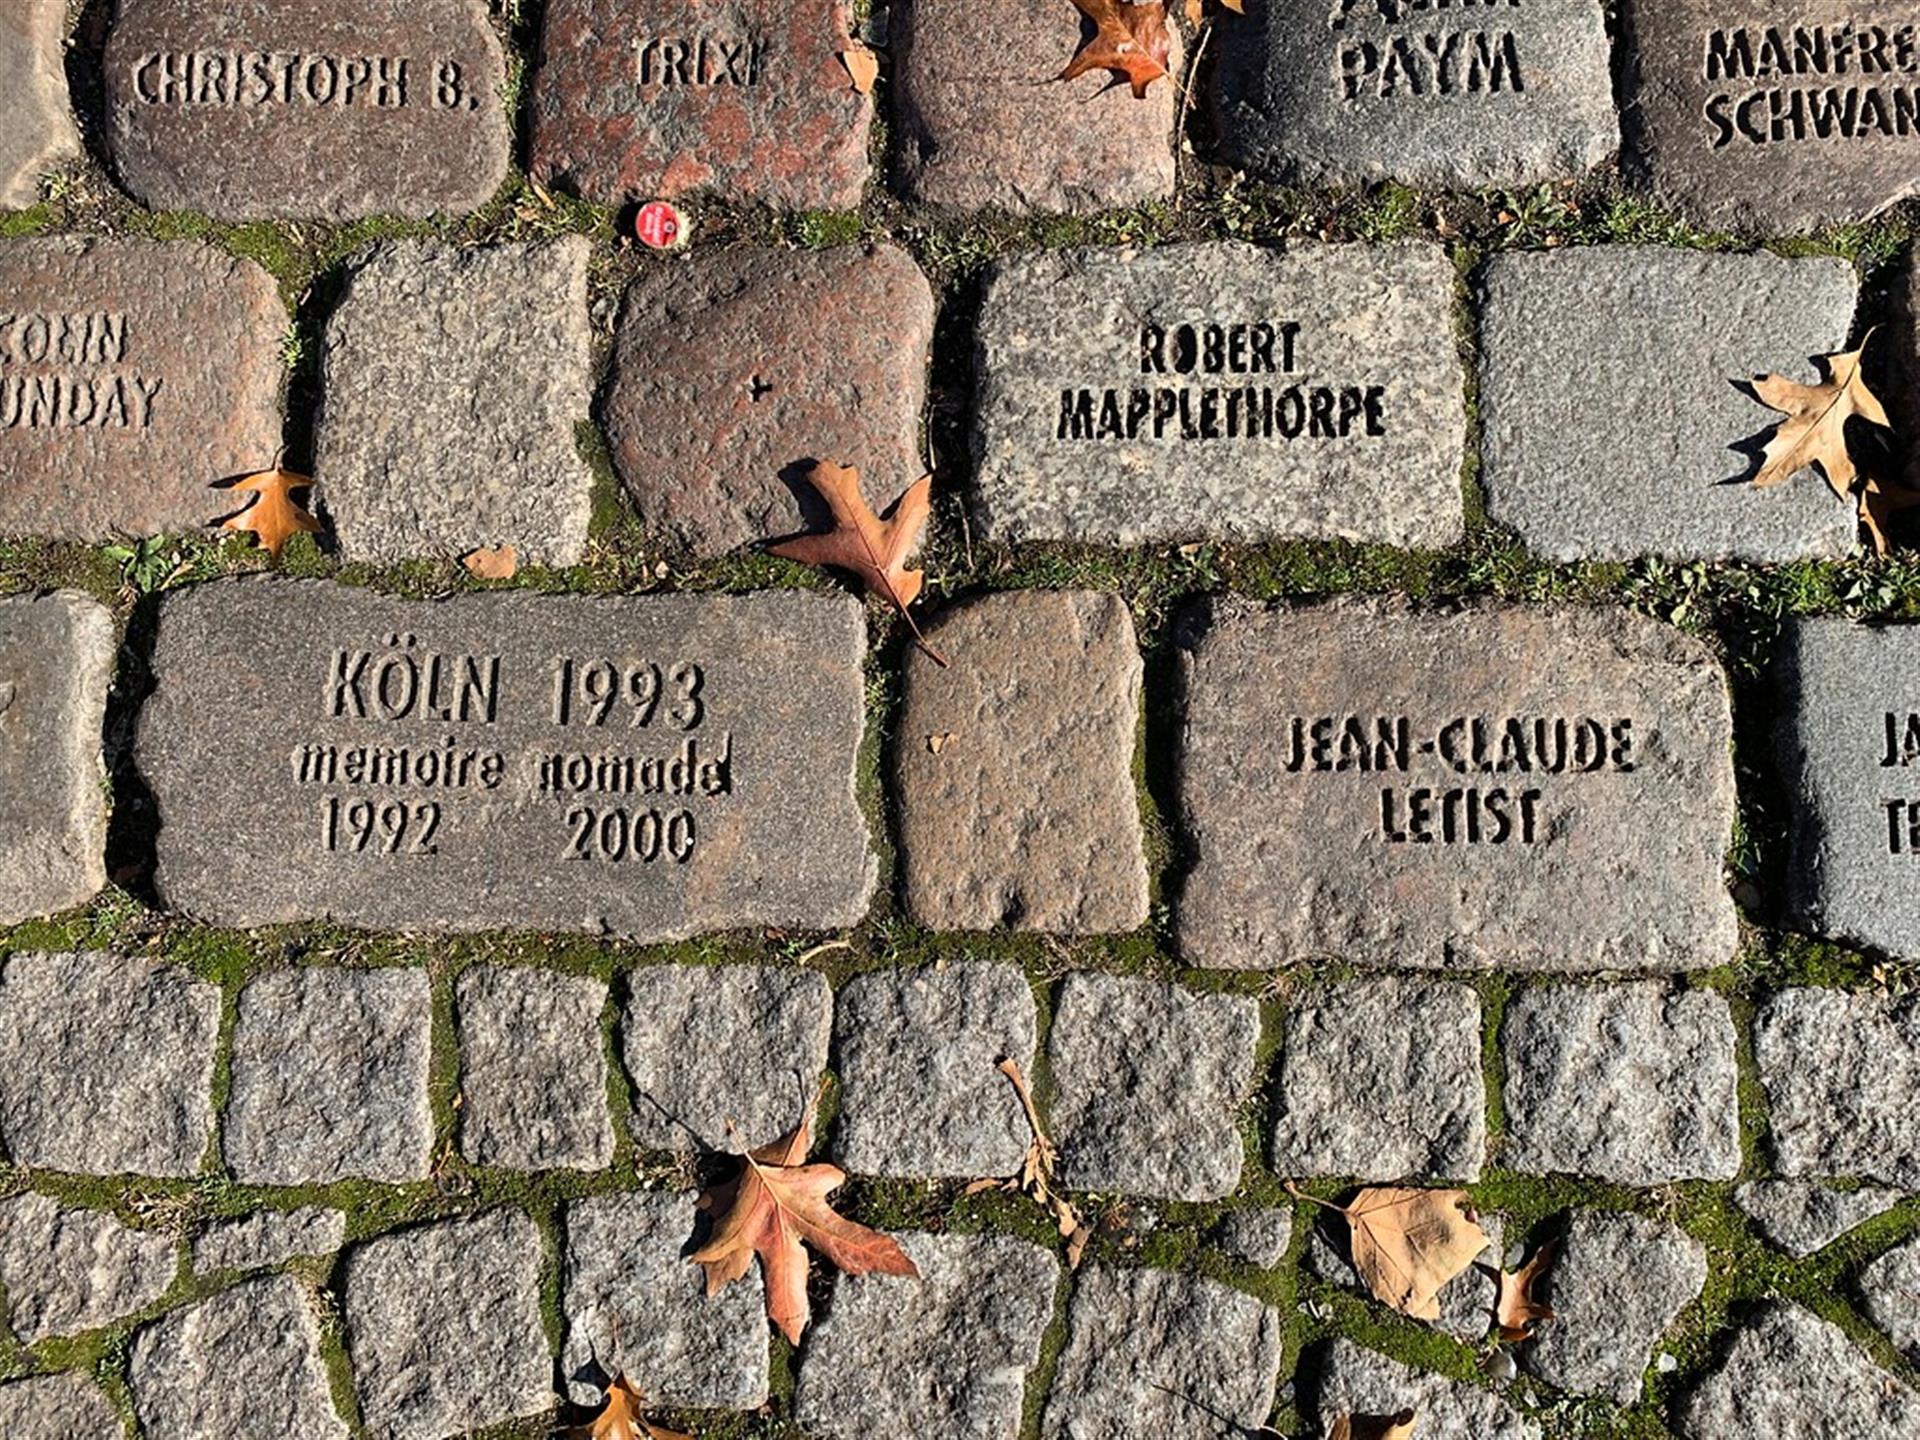 Das Denkmal "Das kalte Eck" für HIV-Verstorbene am Kölner Rheinufer (2021). Das Denkmal erinnert unter anderem an den einflussreichen Kölner Aktivisten Jean-Claude Letist, der 1990 ebenfalls an den Folgen von AIDS verstarb. &copy; Janina Schwiderski / Landschaftsverband Rheinland / CC BY 4.0